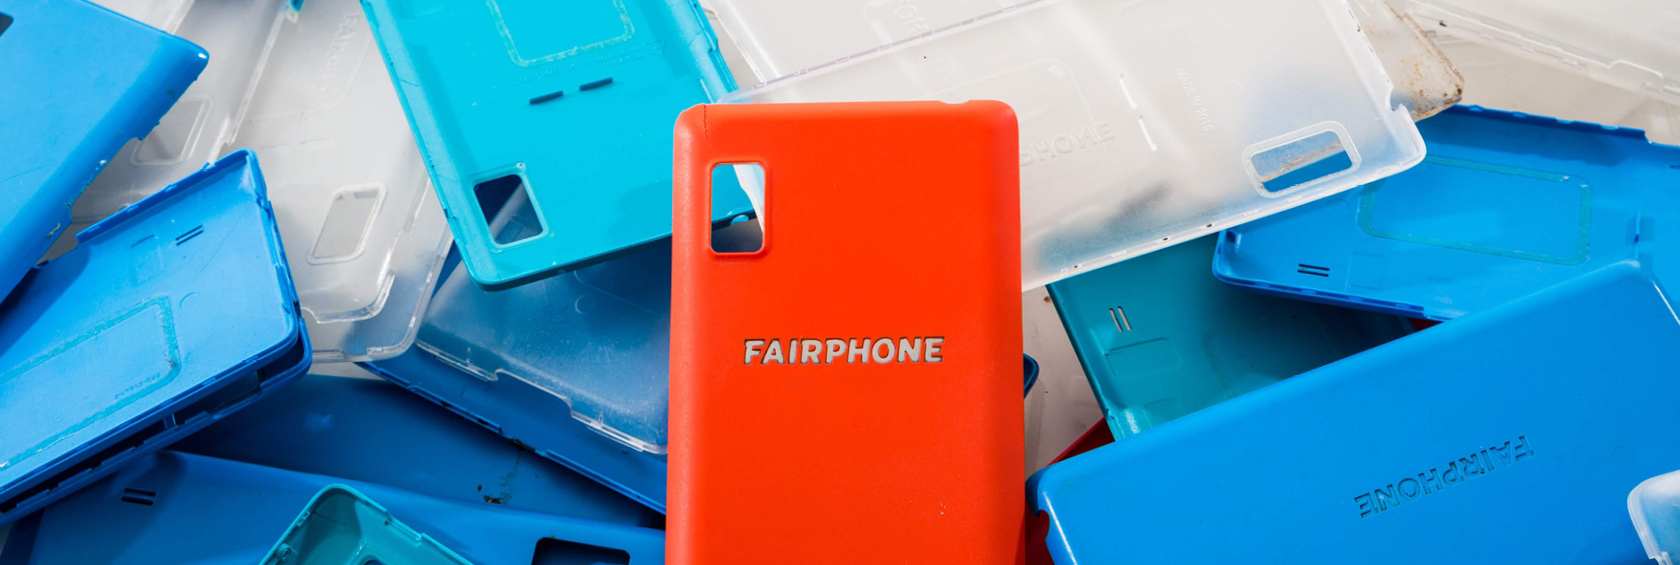 Transformer les déchets en trésors – Fairphone